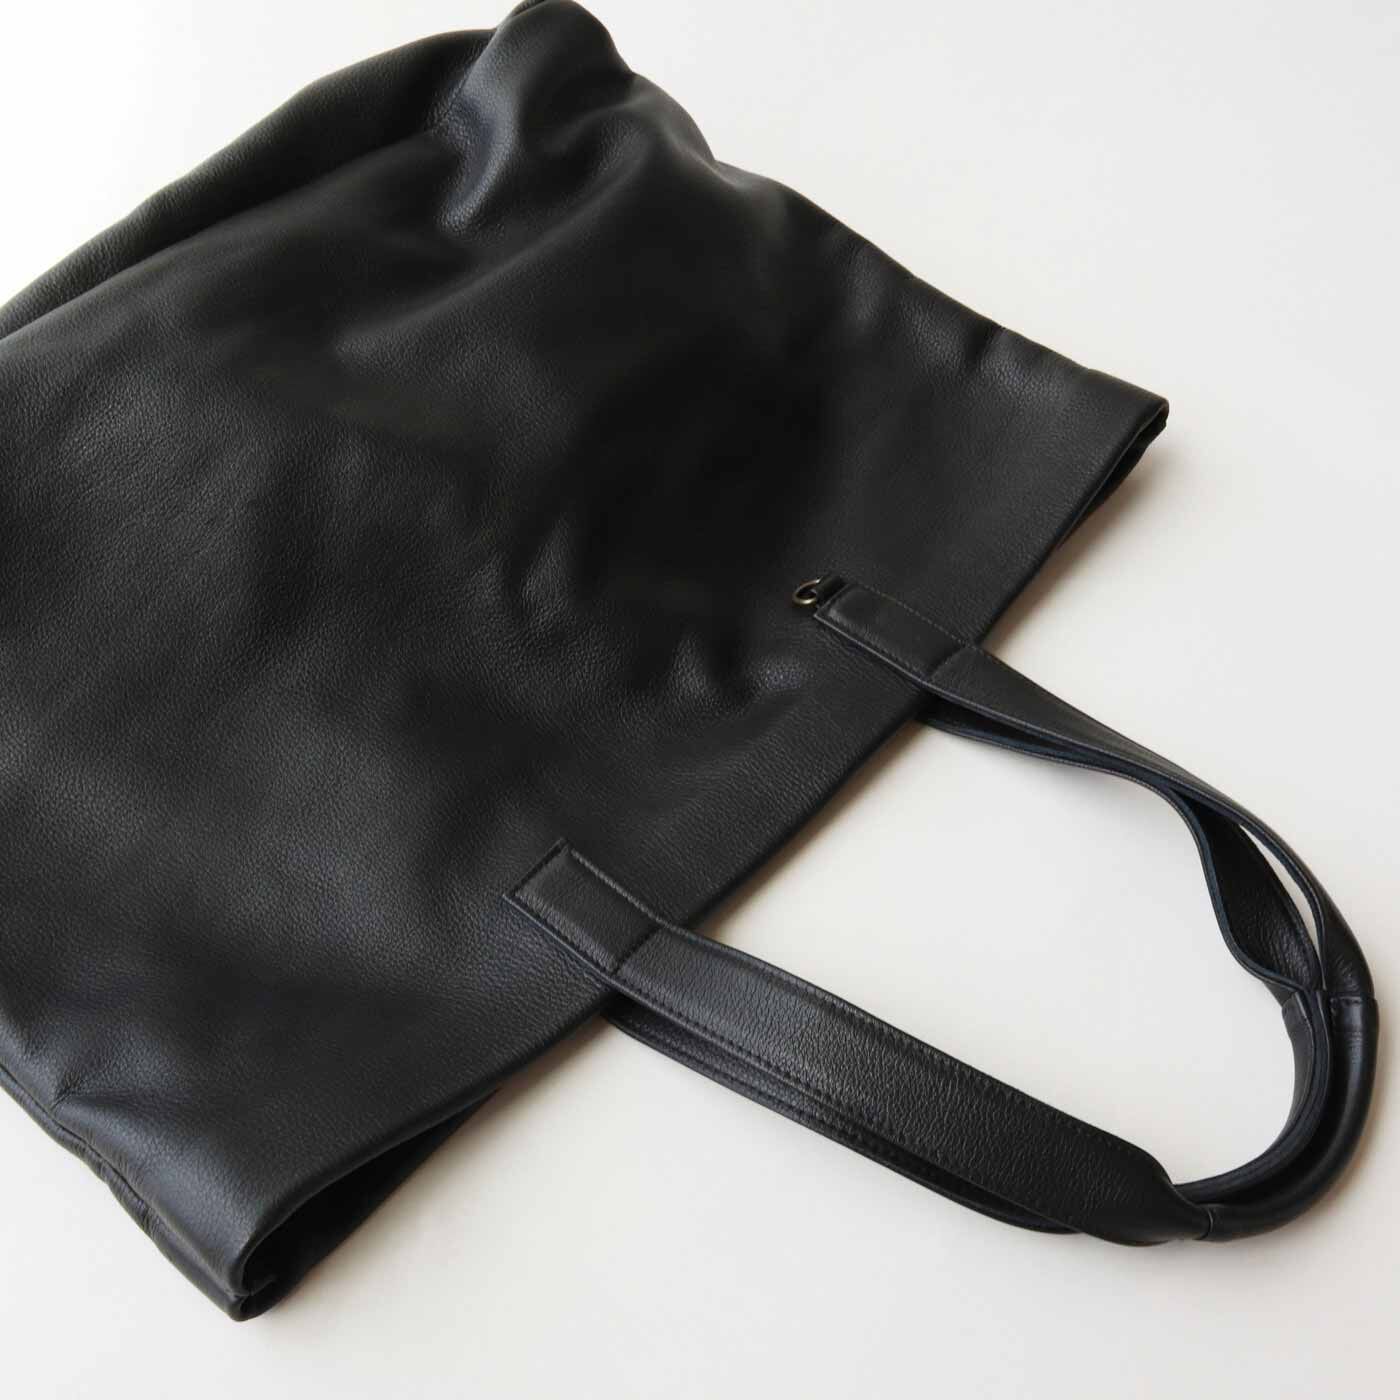 ＆Stories|福岡の鞄作家が作った 職人本革のホエールトートバッグ〈ブラック〉|まち幅はたっぷり約19cm。底はあえて芯を入れず、革のやわらかさをそのままに。